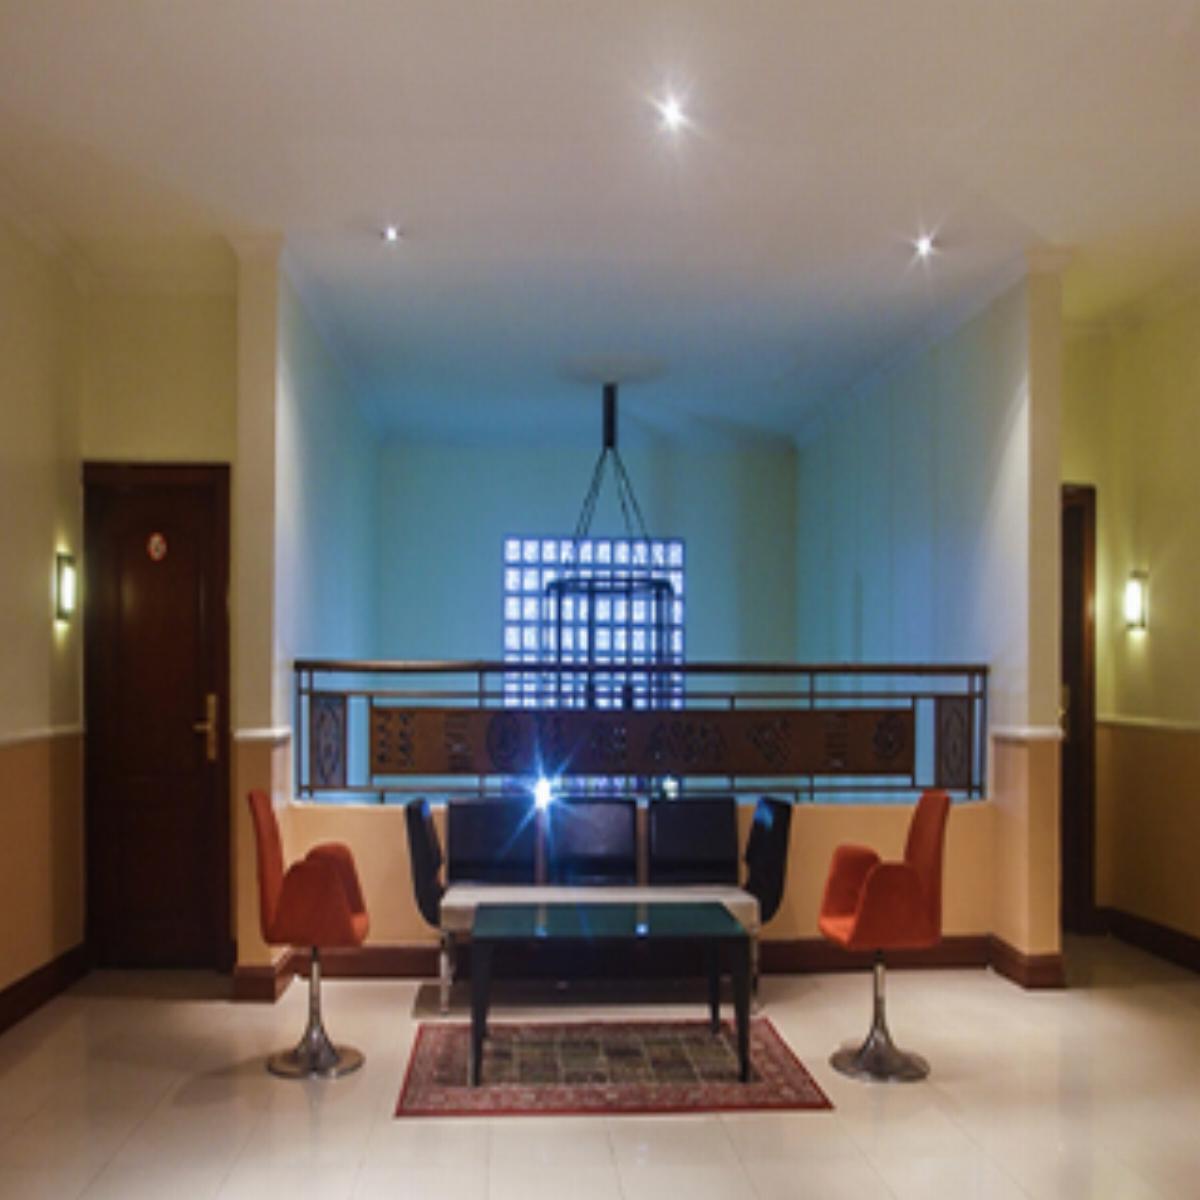 Savoy Suites Ltd Hotel Lagos Nigeria